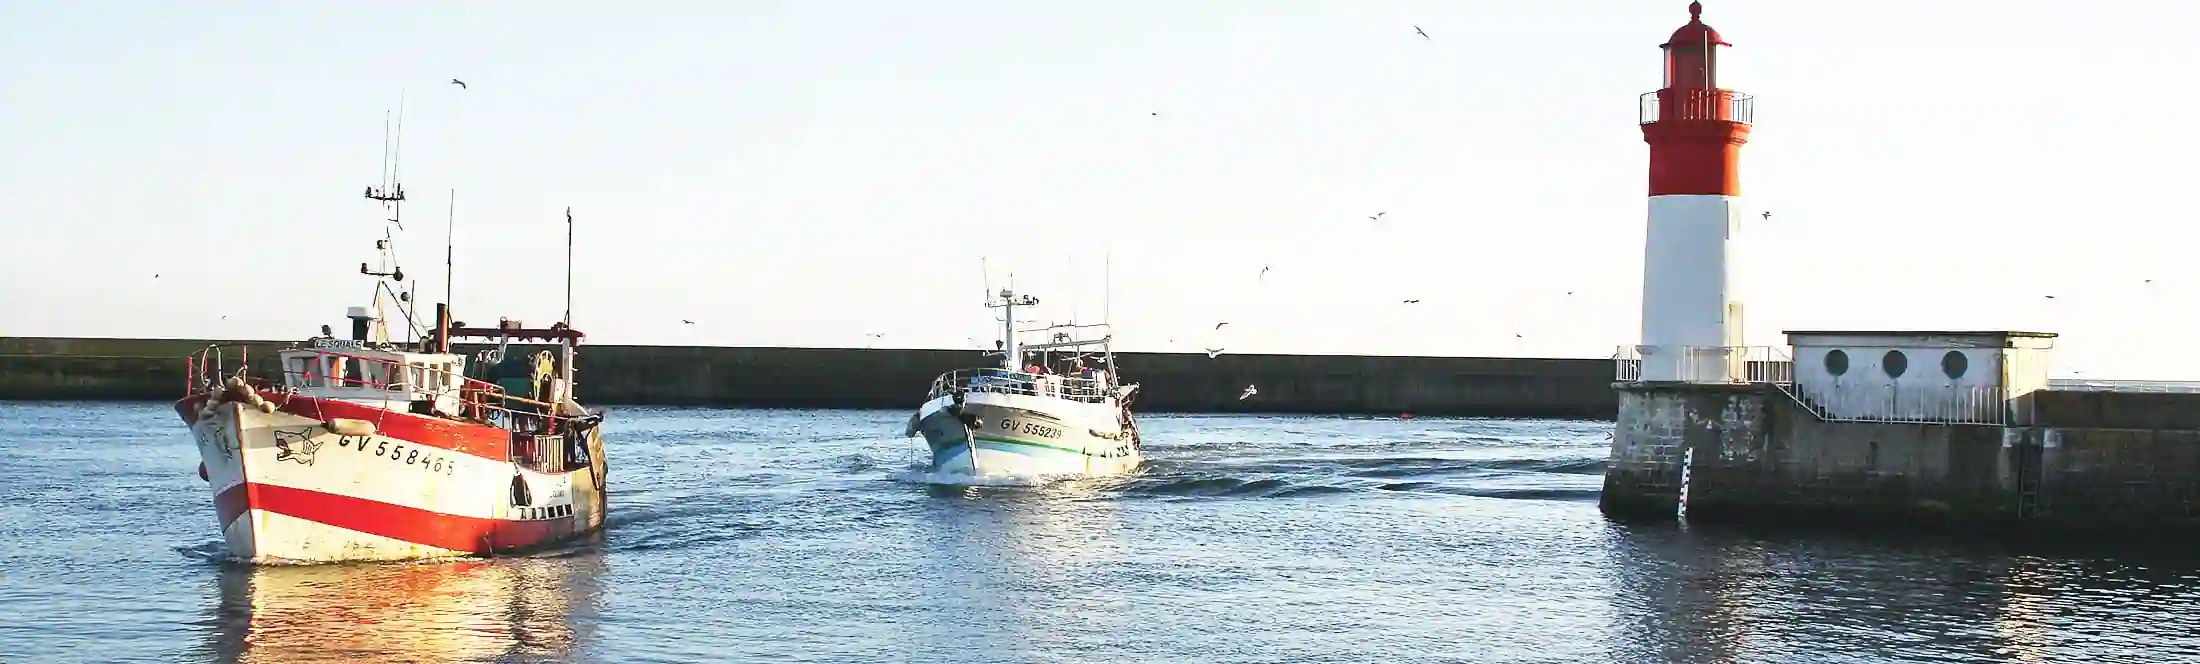 Découverte d'un port de pêche pendant une classe de mer en Bretagne hero-bretagne-sauvage